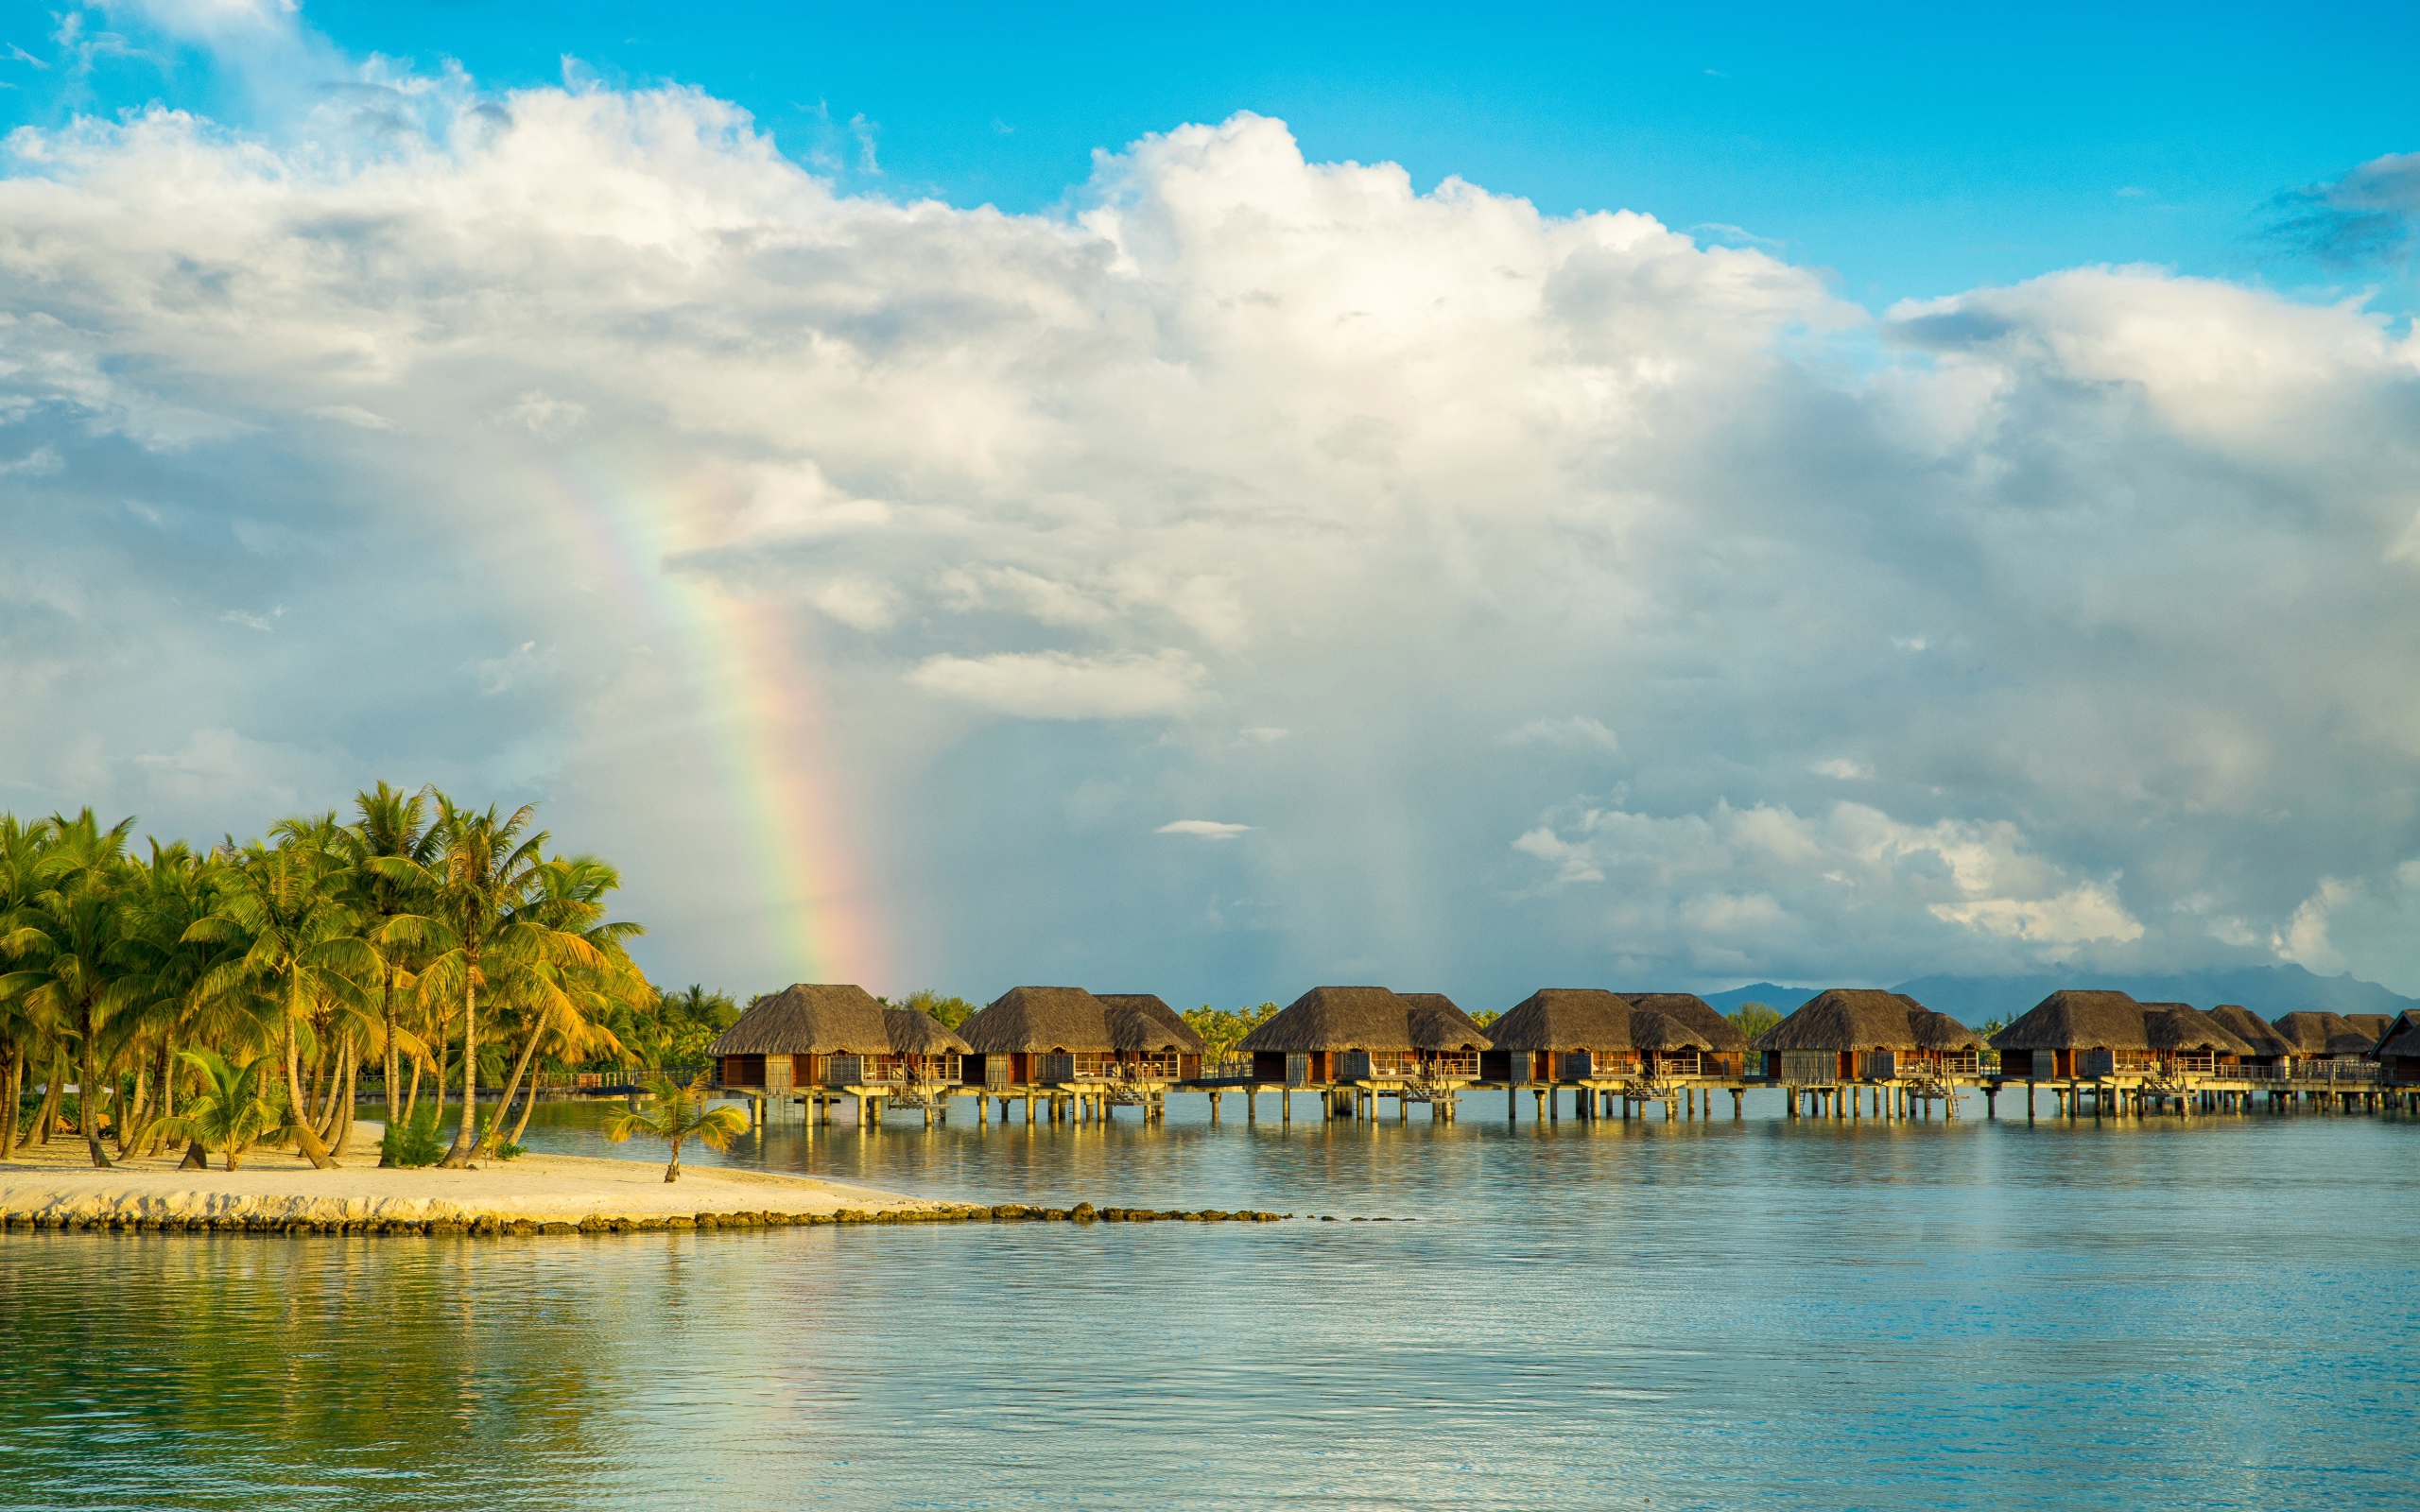 Бунгало в воде на тропическом пляже под облачным небом с радугой